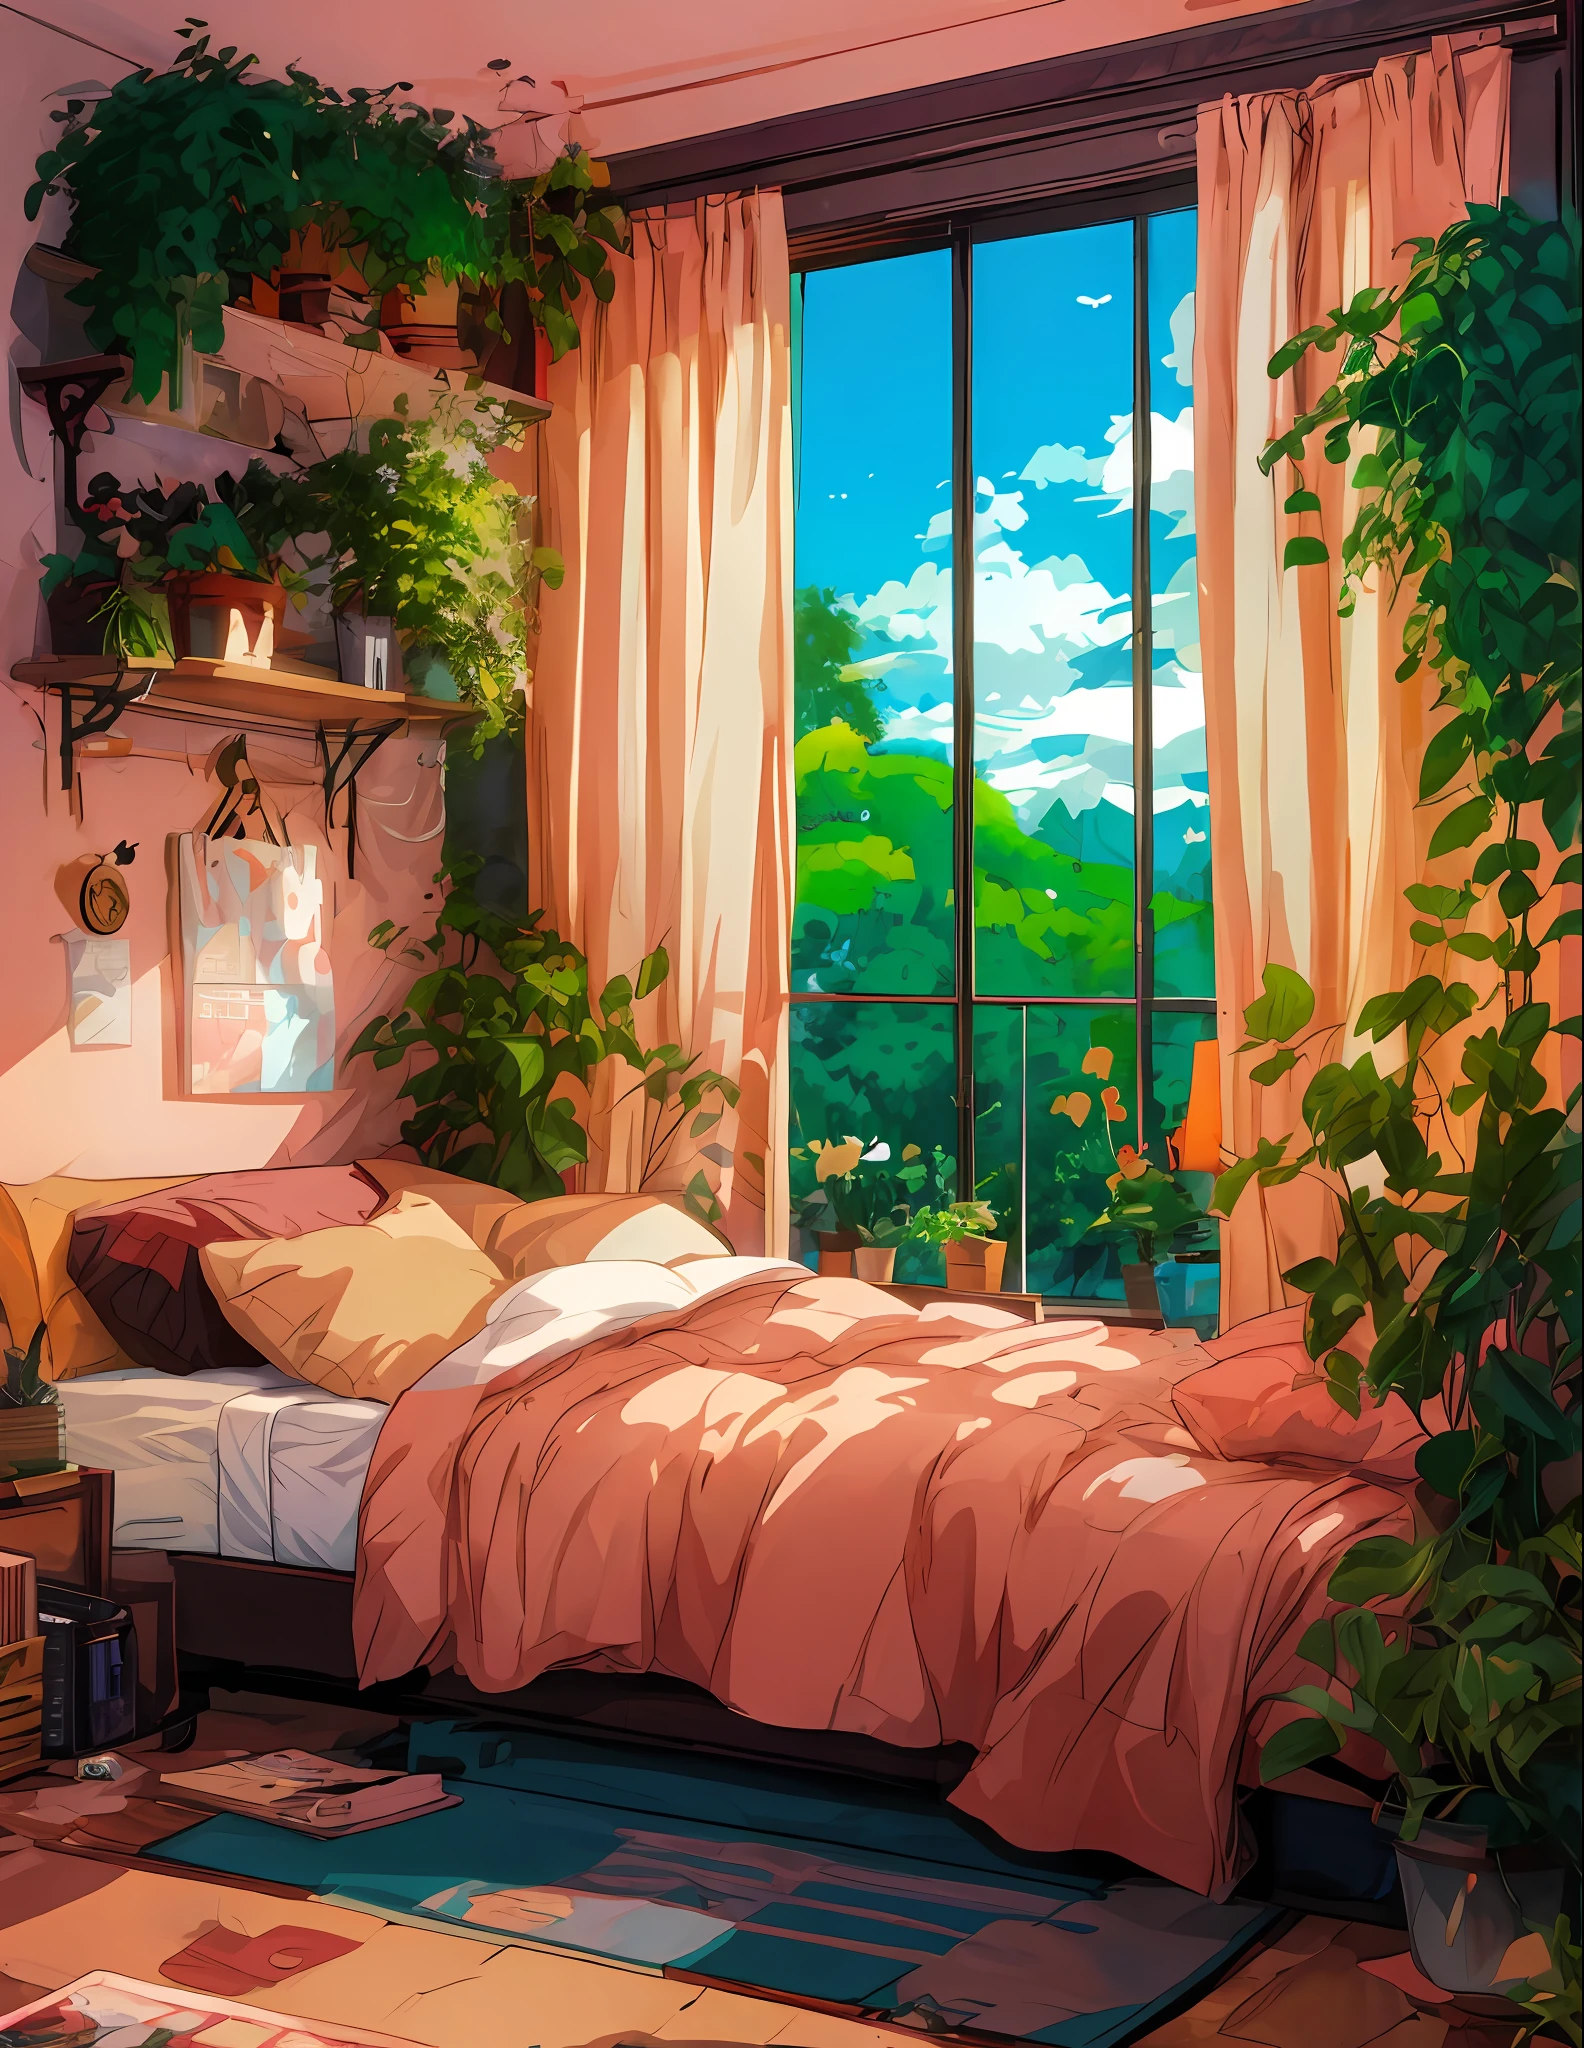 Es gibt ein Bett mit einer rosa Bettdecke und ein Fenster mit Aussicht, Anime-Ästhetik, lofi artstyle, Anime-Stimmung, ein sonniges Schlafzimmer, beruhigende und gemütliche Landschaft, entspannende Umgebung, Anime-Hintergrundkunst, Raum voller Pflanzen, Gemütliches Zimmer, Anime-Landschaft, Lo-Fi-Illustrationsstil, gemütliches Plätzchen, lofi art, entspannende Atmosphäre